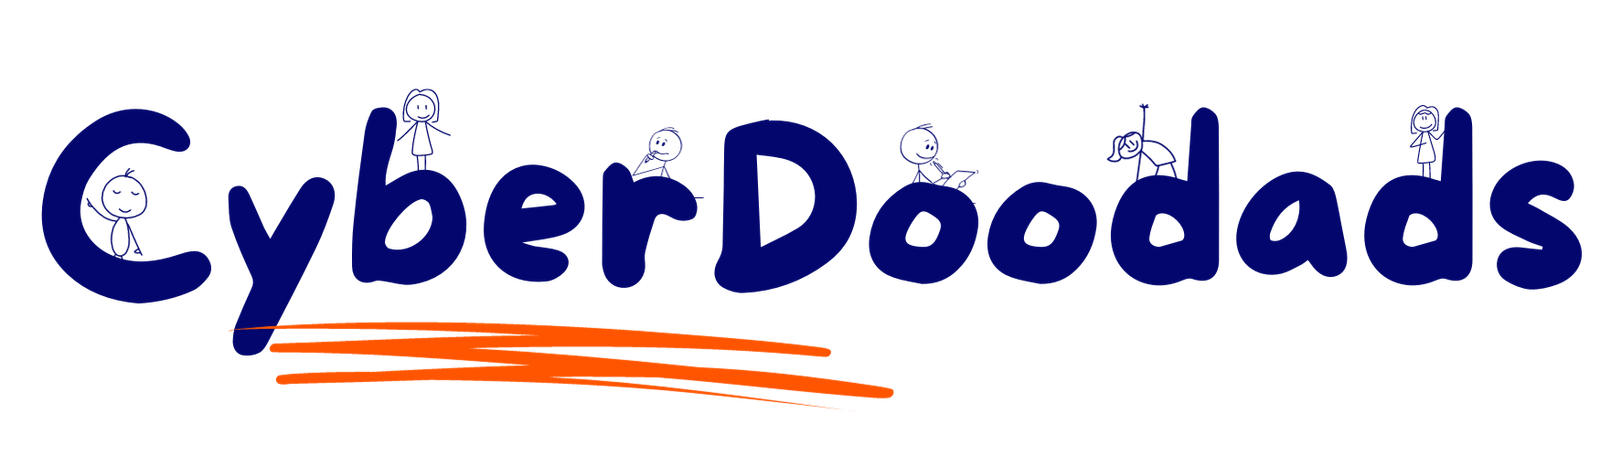 Cyber Doodads-Logo